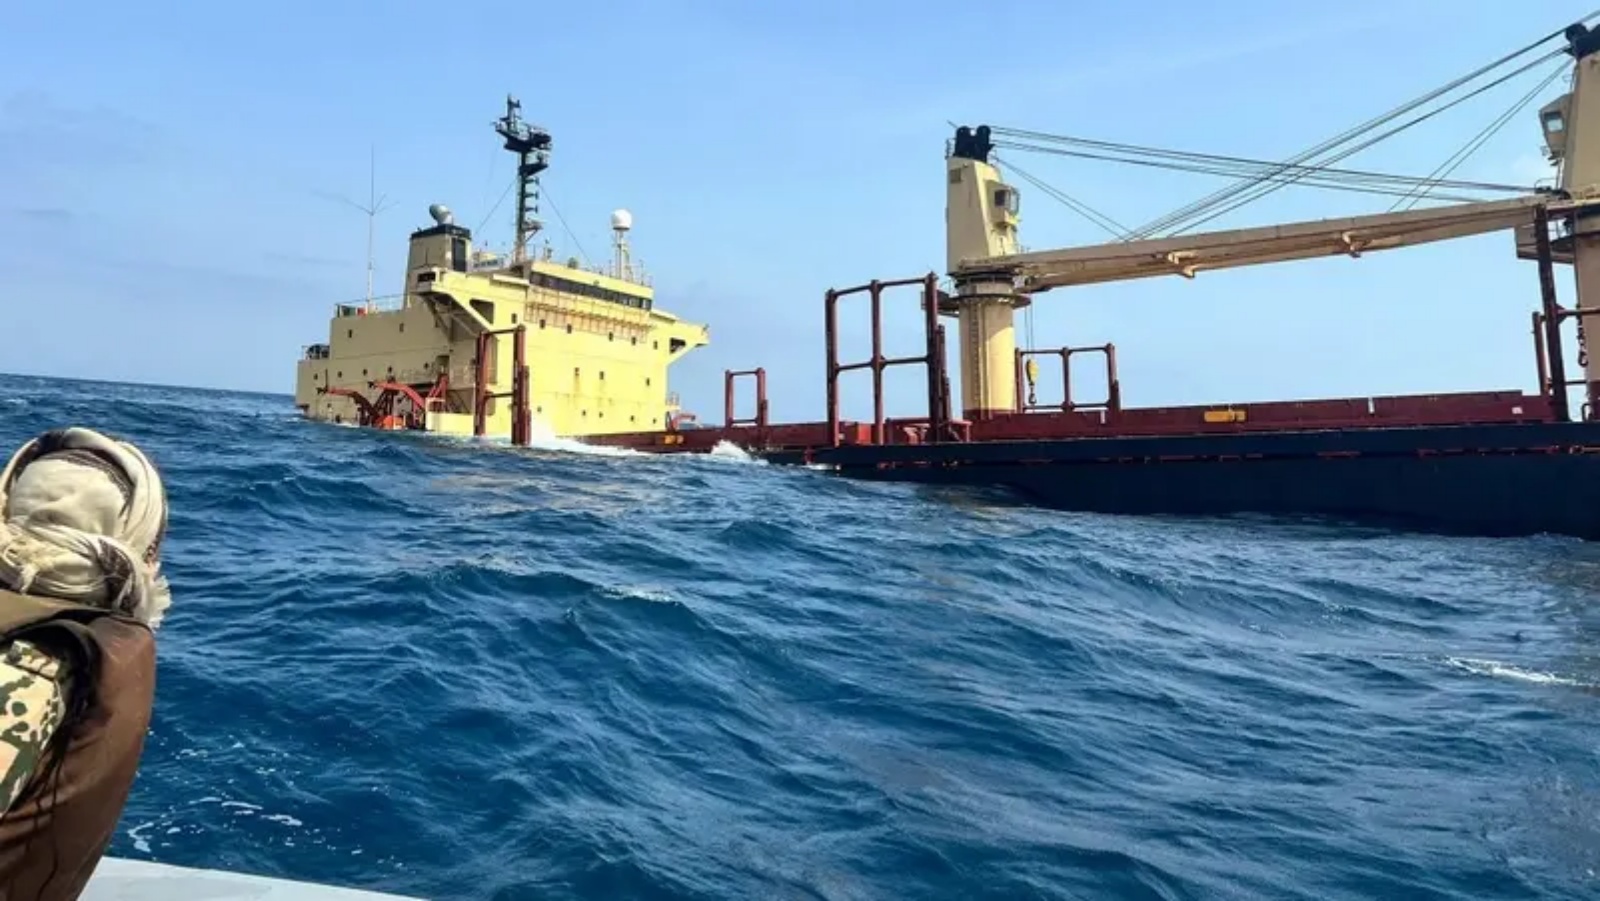 السفينة روبيمار التي غرقت في البحر الأحمر قبالة سواحل اليمن الغربية جراء هجوم لميليشيا الحوثي